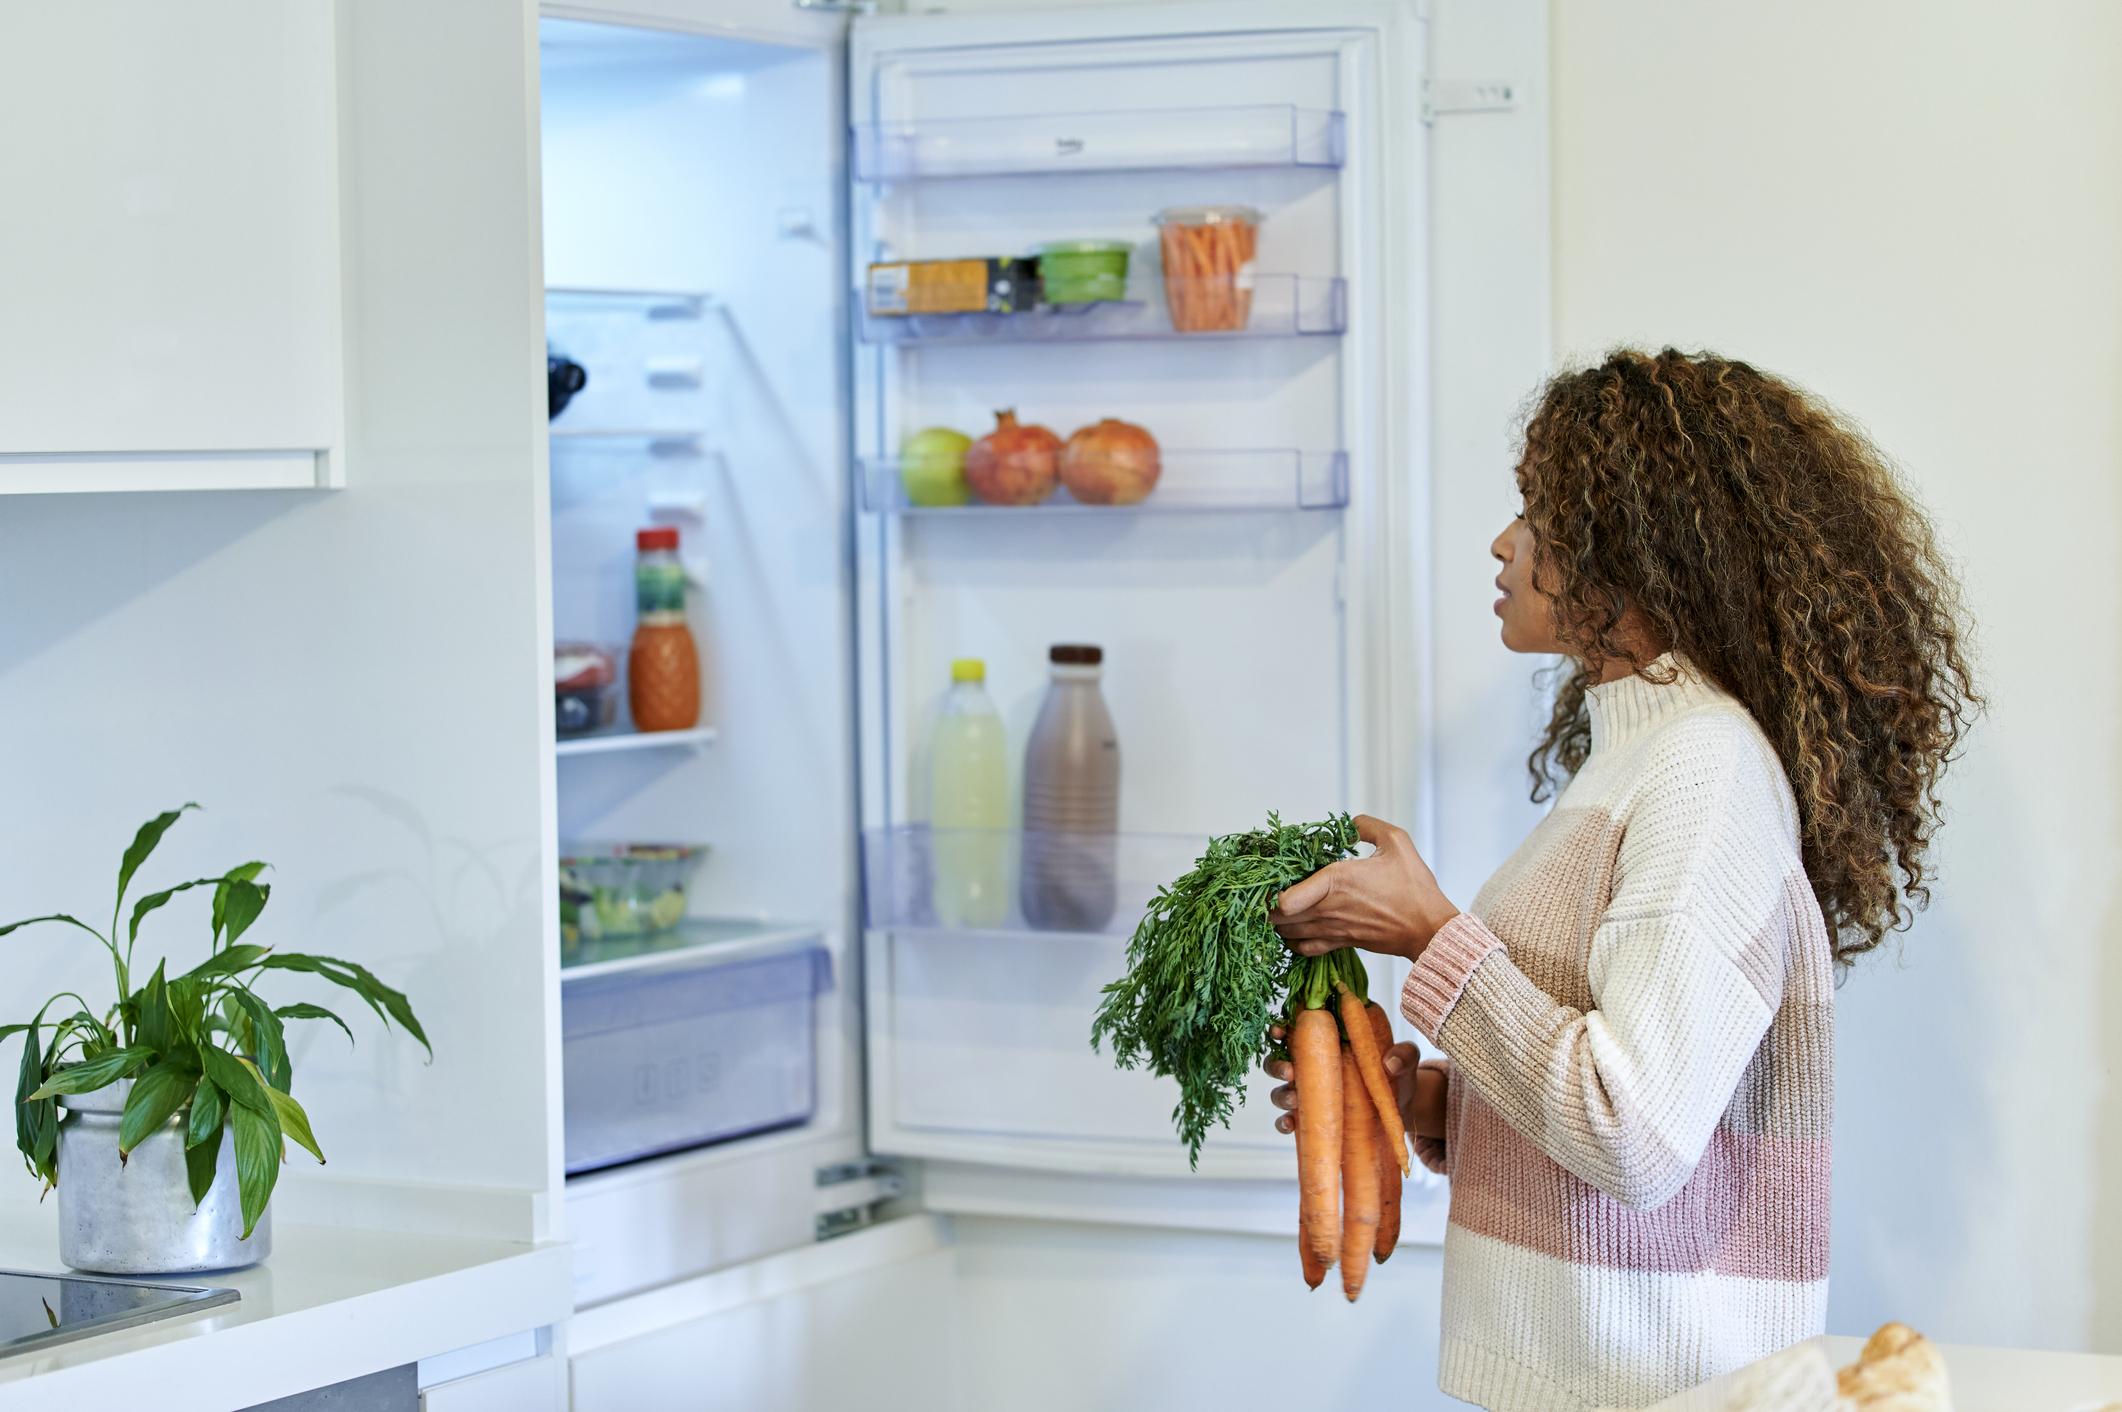 meteoor Kleren Veel Van deur tot groentela: welke plek in je koelkast is nu echt het koudst? -  Libelle Lekker